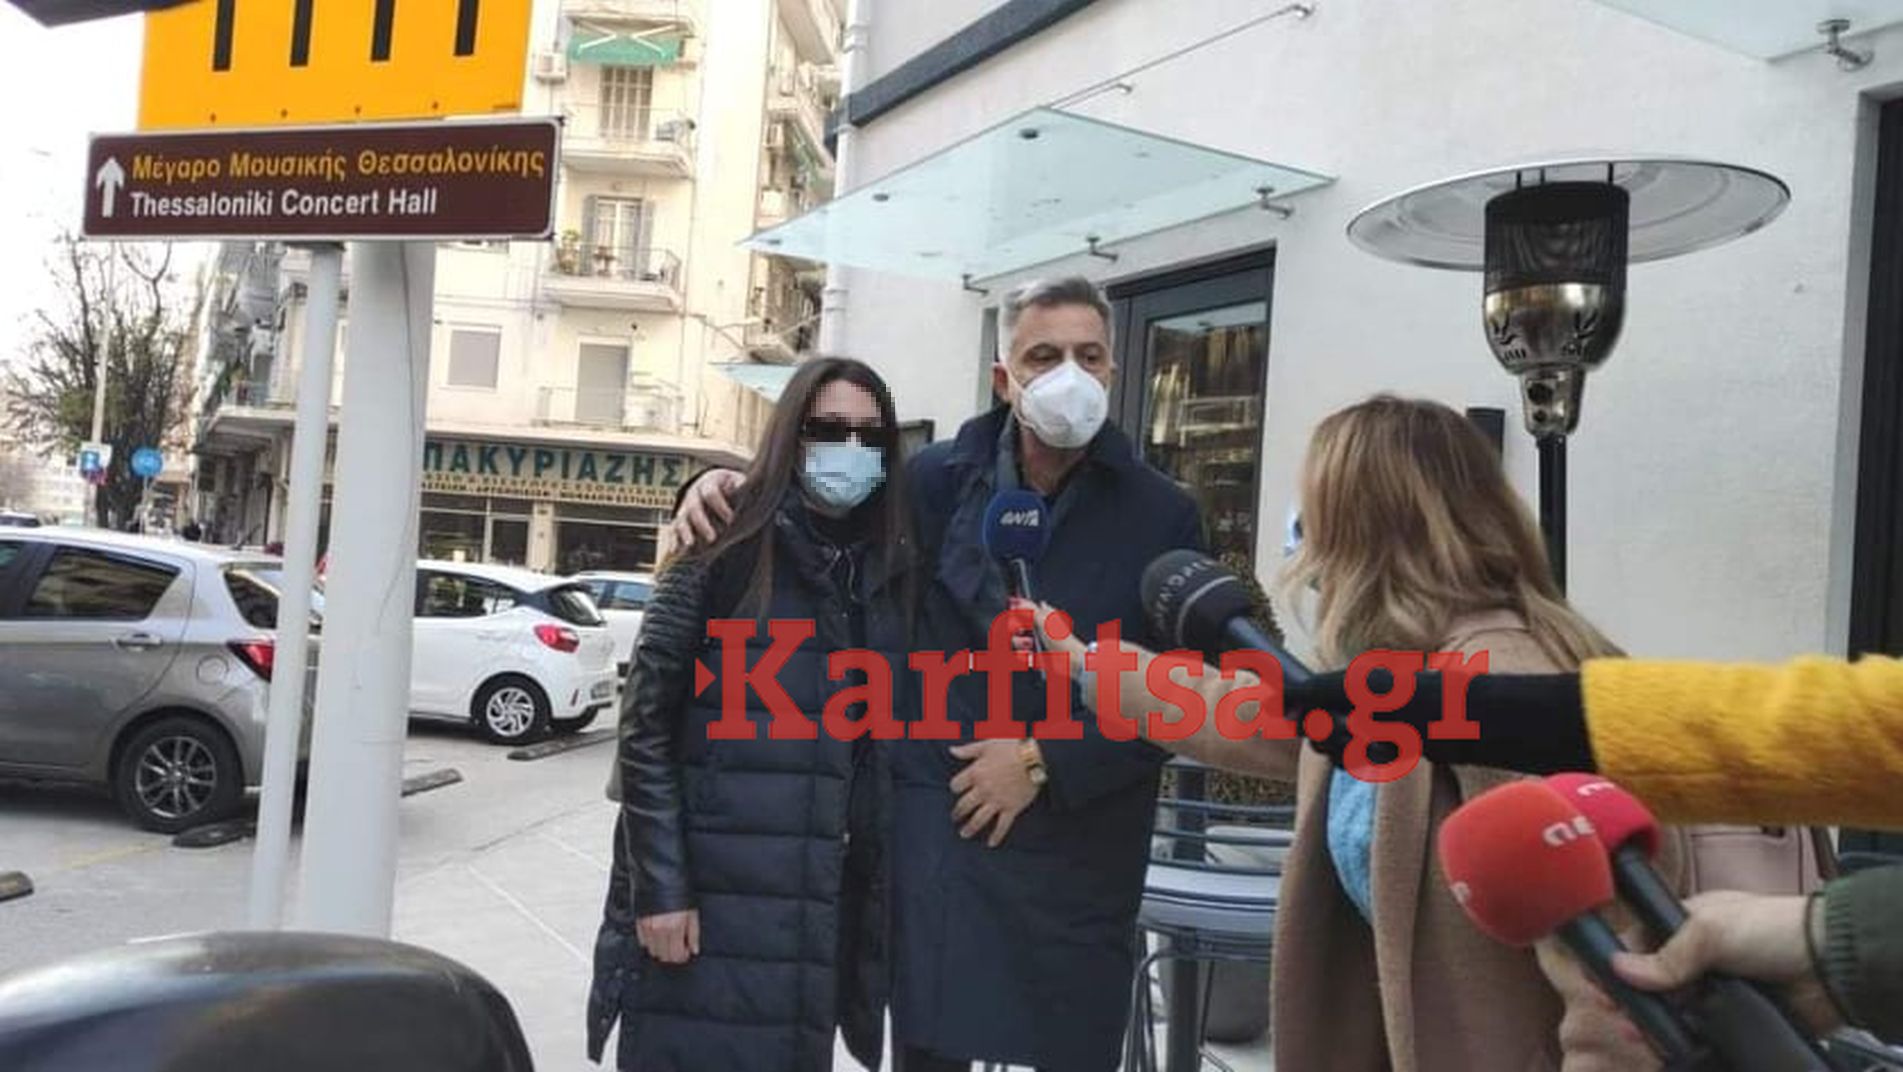 Θεσσαλονίκη: Στο τμήμα Λευκού Πύργου για κατάθεση η 24χρονη- Τι δήλωσε